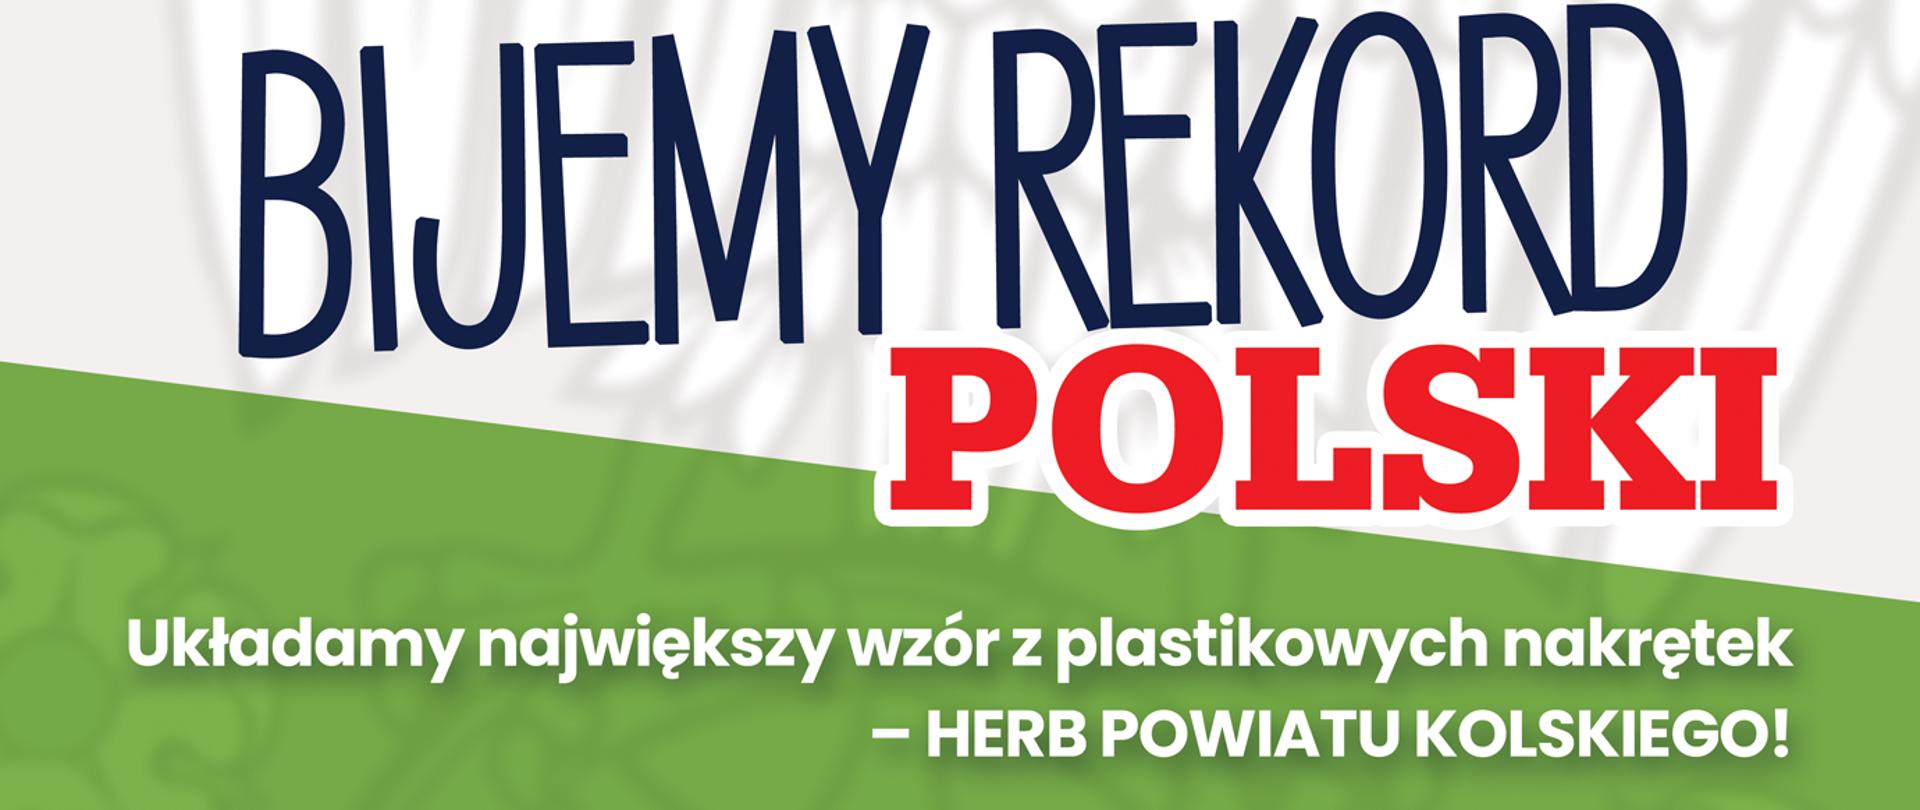 Zdjęcie przedstawia plakat Bijemy rekord Polski. Na plakacie widnieje herb powiatu kolskiego oraz nakrętki z prośbą o przynoszenie jak największej ilości nakrętek w celu pobicia rekordu.